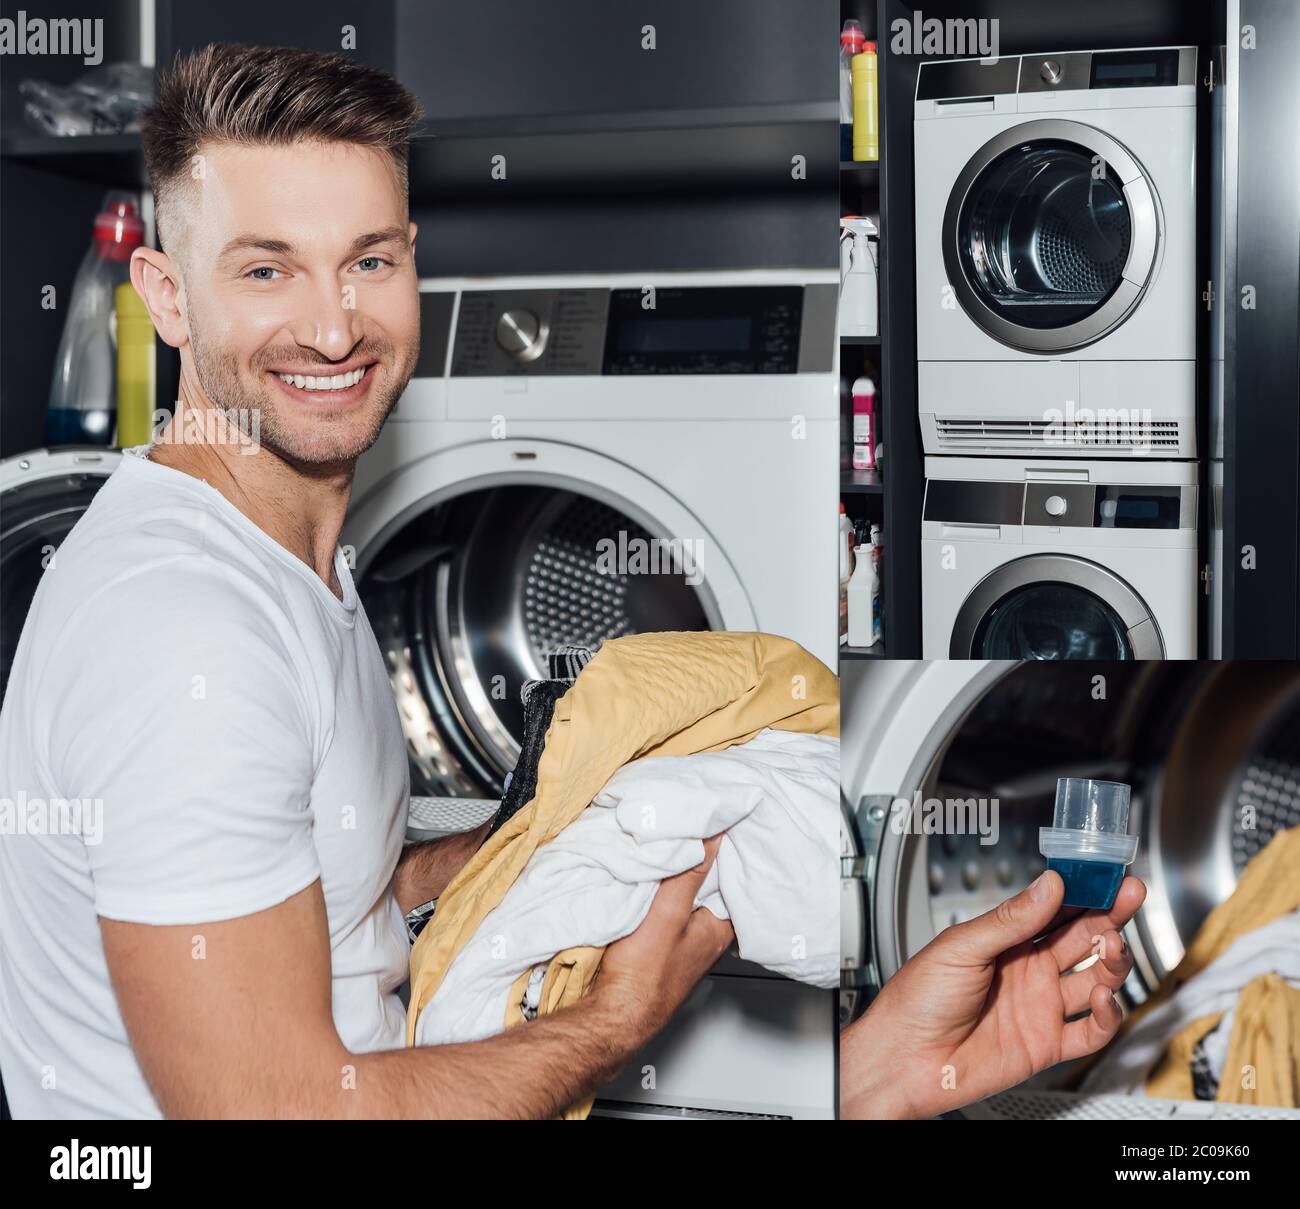 collage di uomo allegro che tiene vestiti sporchi e misurino con detersivo vicino alle lavatrici Foto Stock